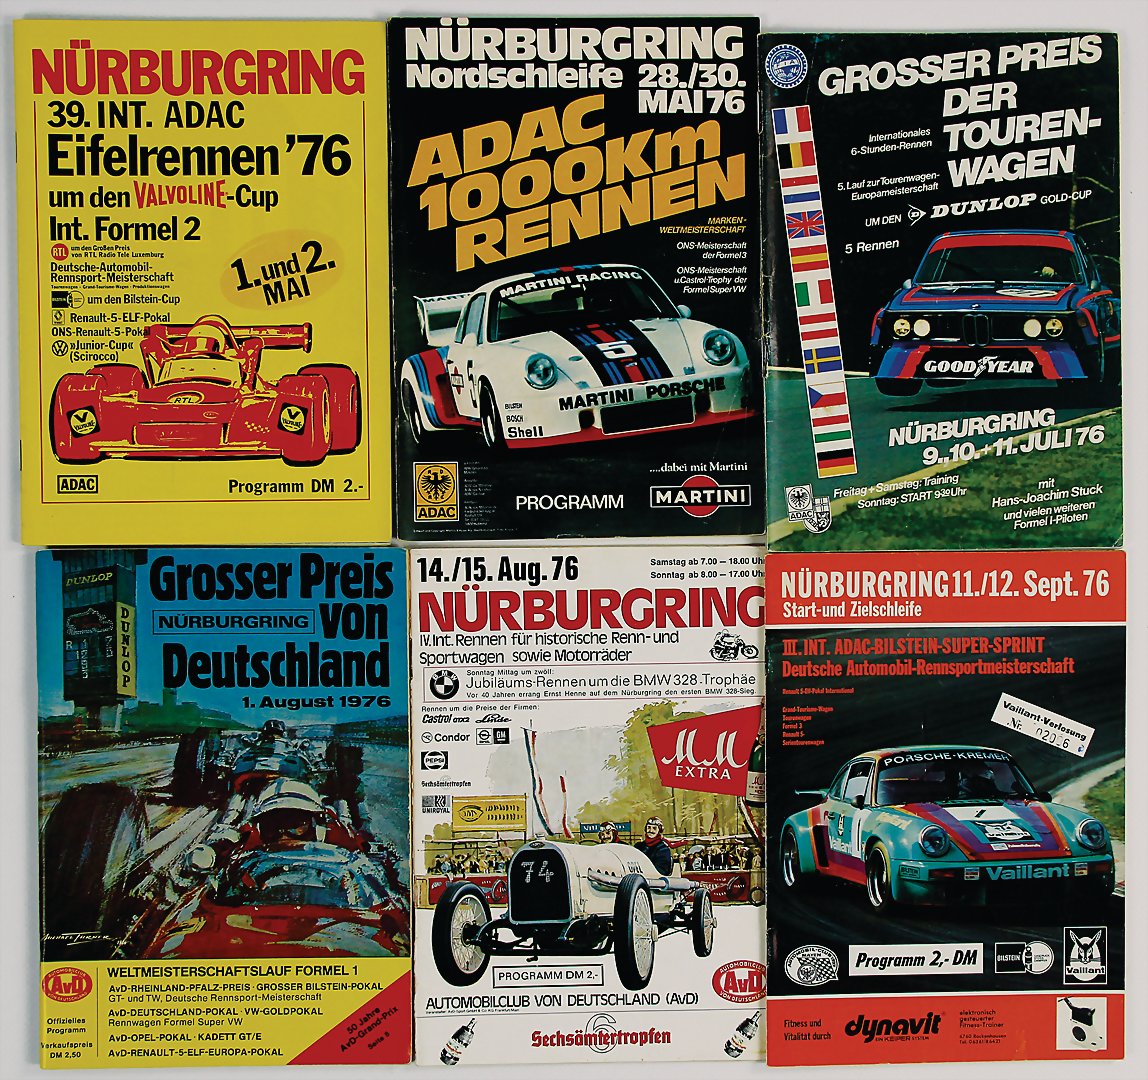 Juli 80 Grosser Preis der Tourenwagen Nürburgring Programmheft I05 å * 5 6 